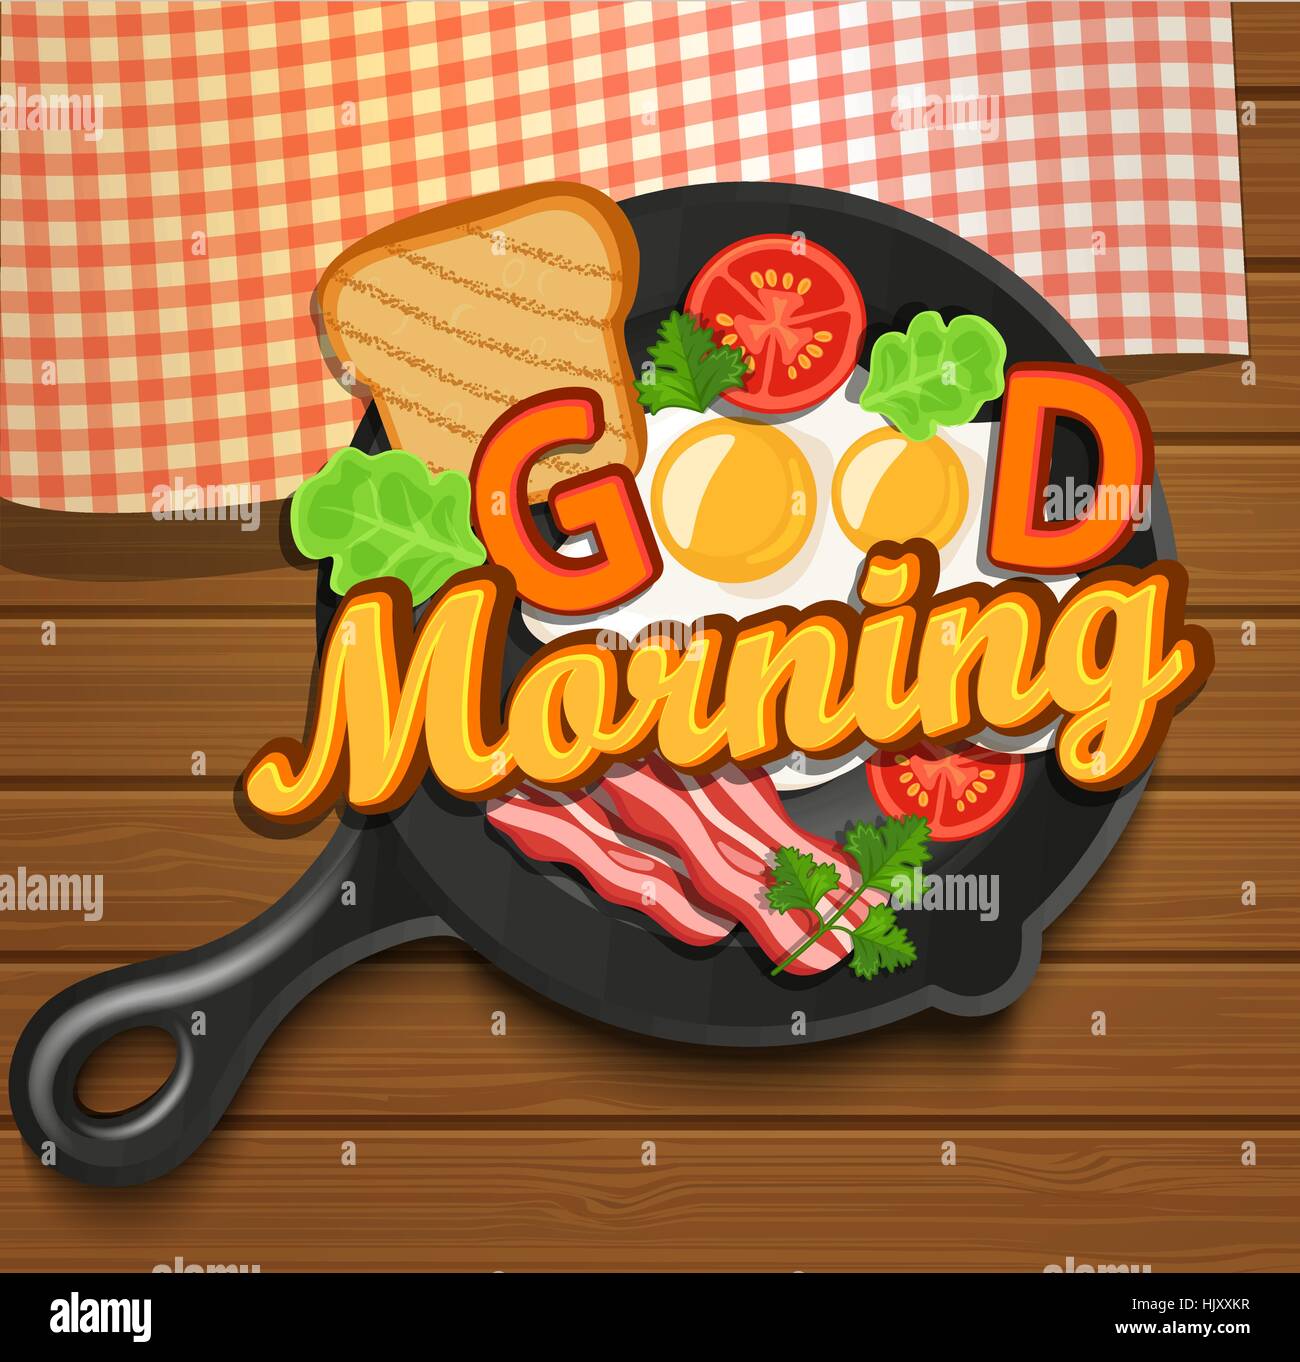 Prima colazione inglese - uovo fritto, pomodori, bacon e toast. Vista dall'alto. Lettering - Buongiorno, illustrazione vettoriale. Illustrazione Vettoriale